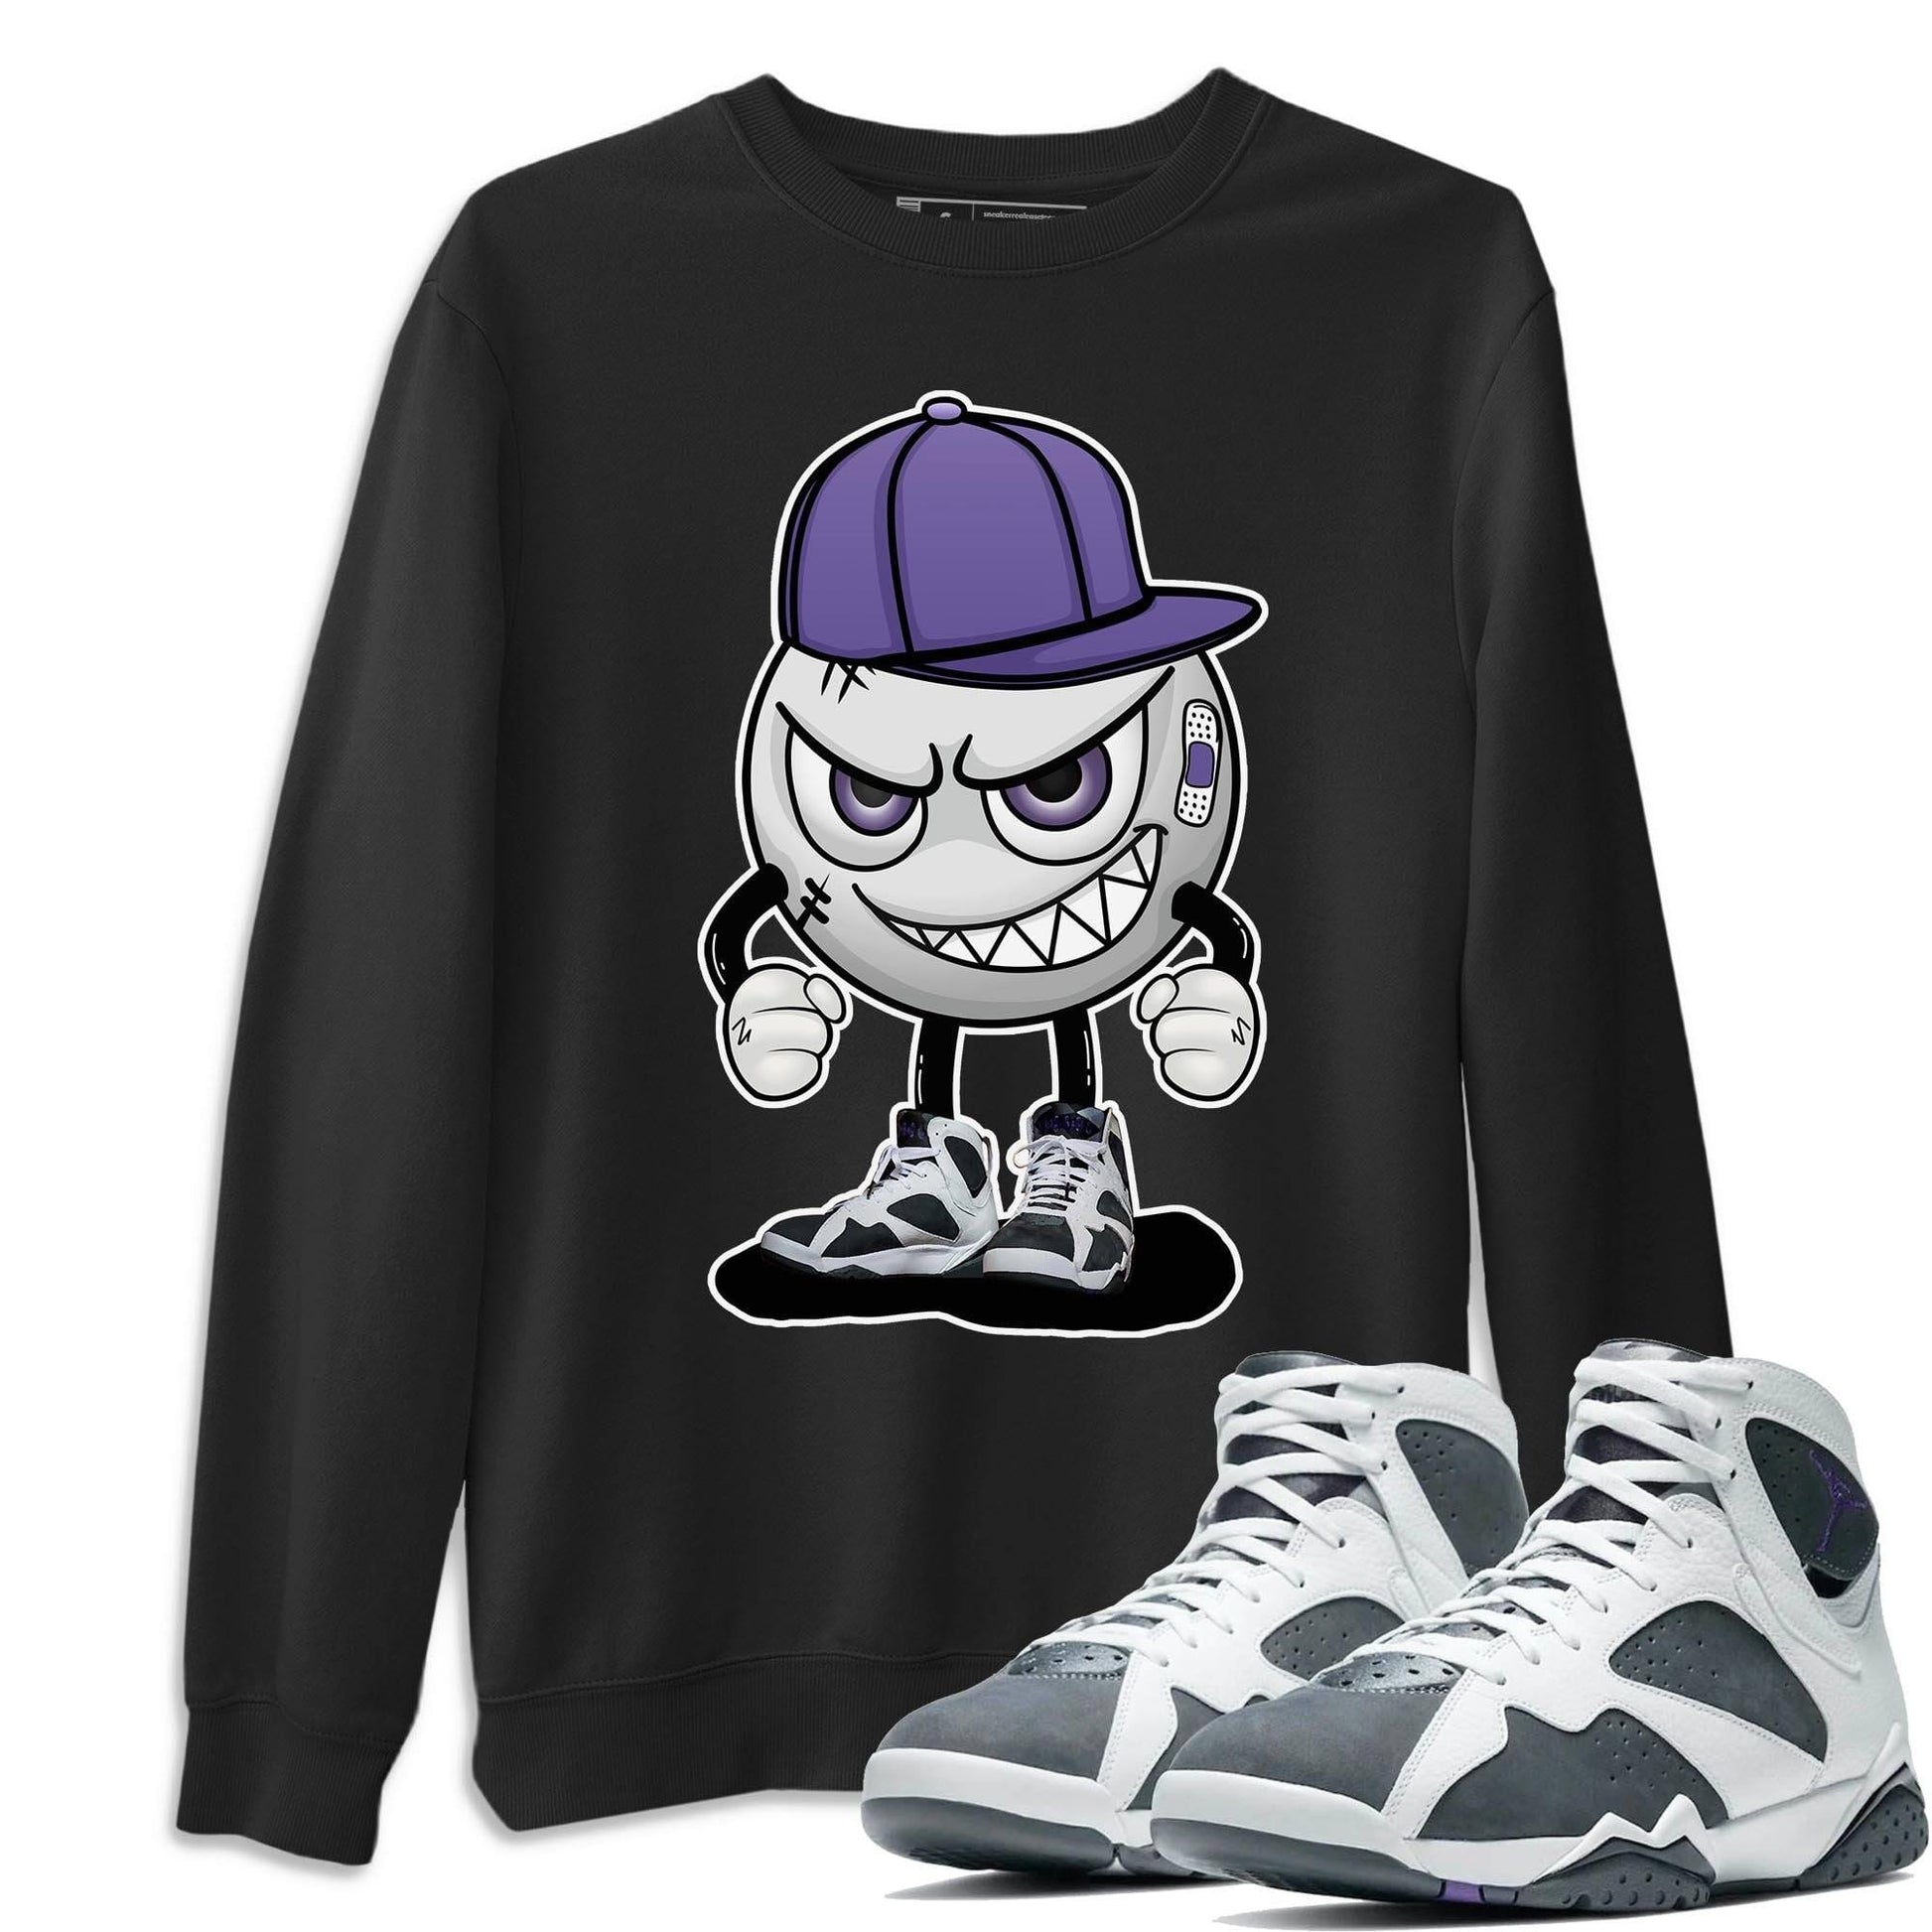 Jordan 7 Flint Shirt To Match Jordans Mischief Emoji Sneaker Tees Jordan 7 Flint Drip Gear Zone Sneaker Matching Clothing Unisex Shirts